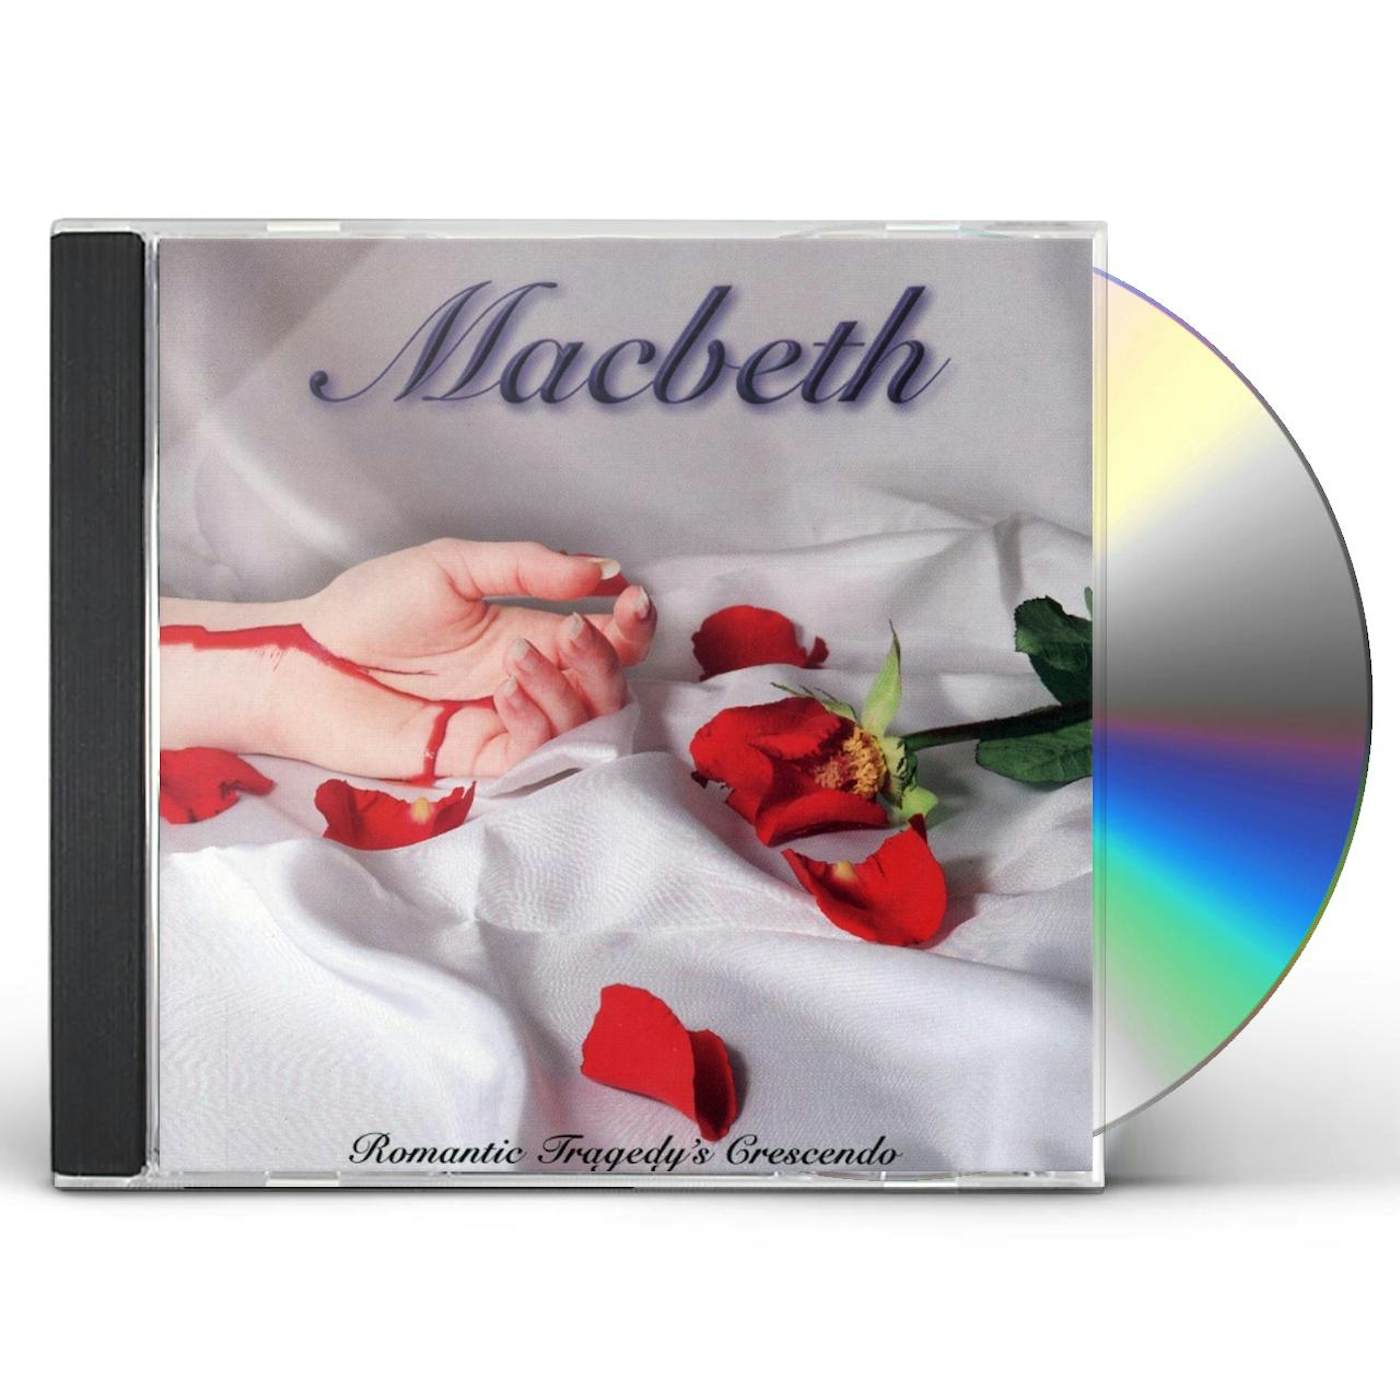 Macbeth ROMANTIC TRAGEDY'S CRESCENDO CD